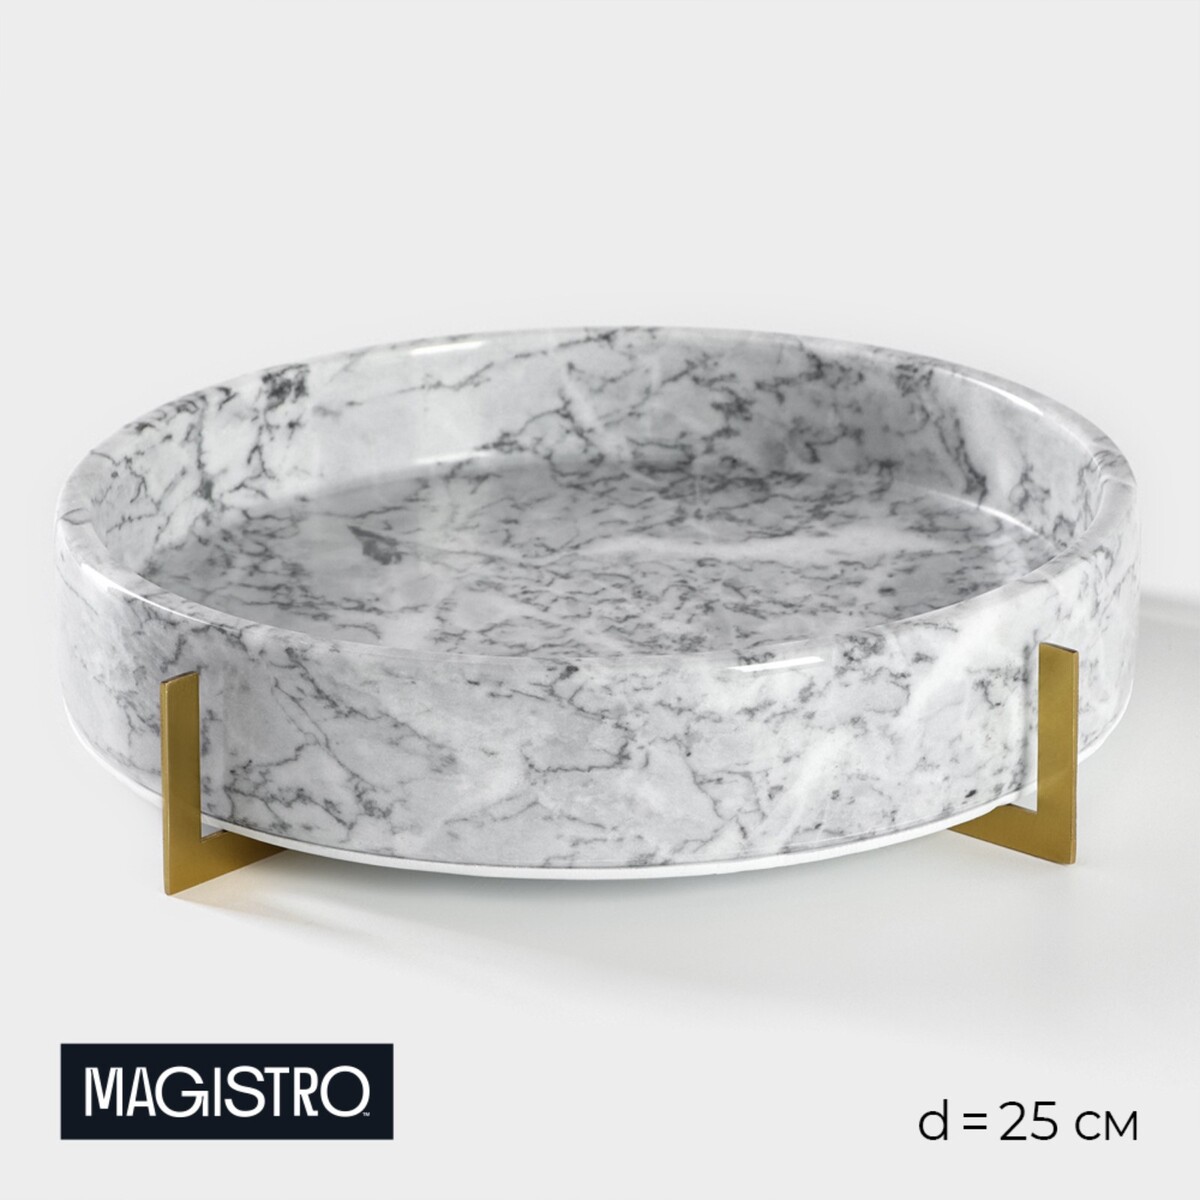 Блюдо из мрамора magistro marble, d=25 см aesthetics of marble